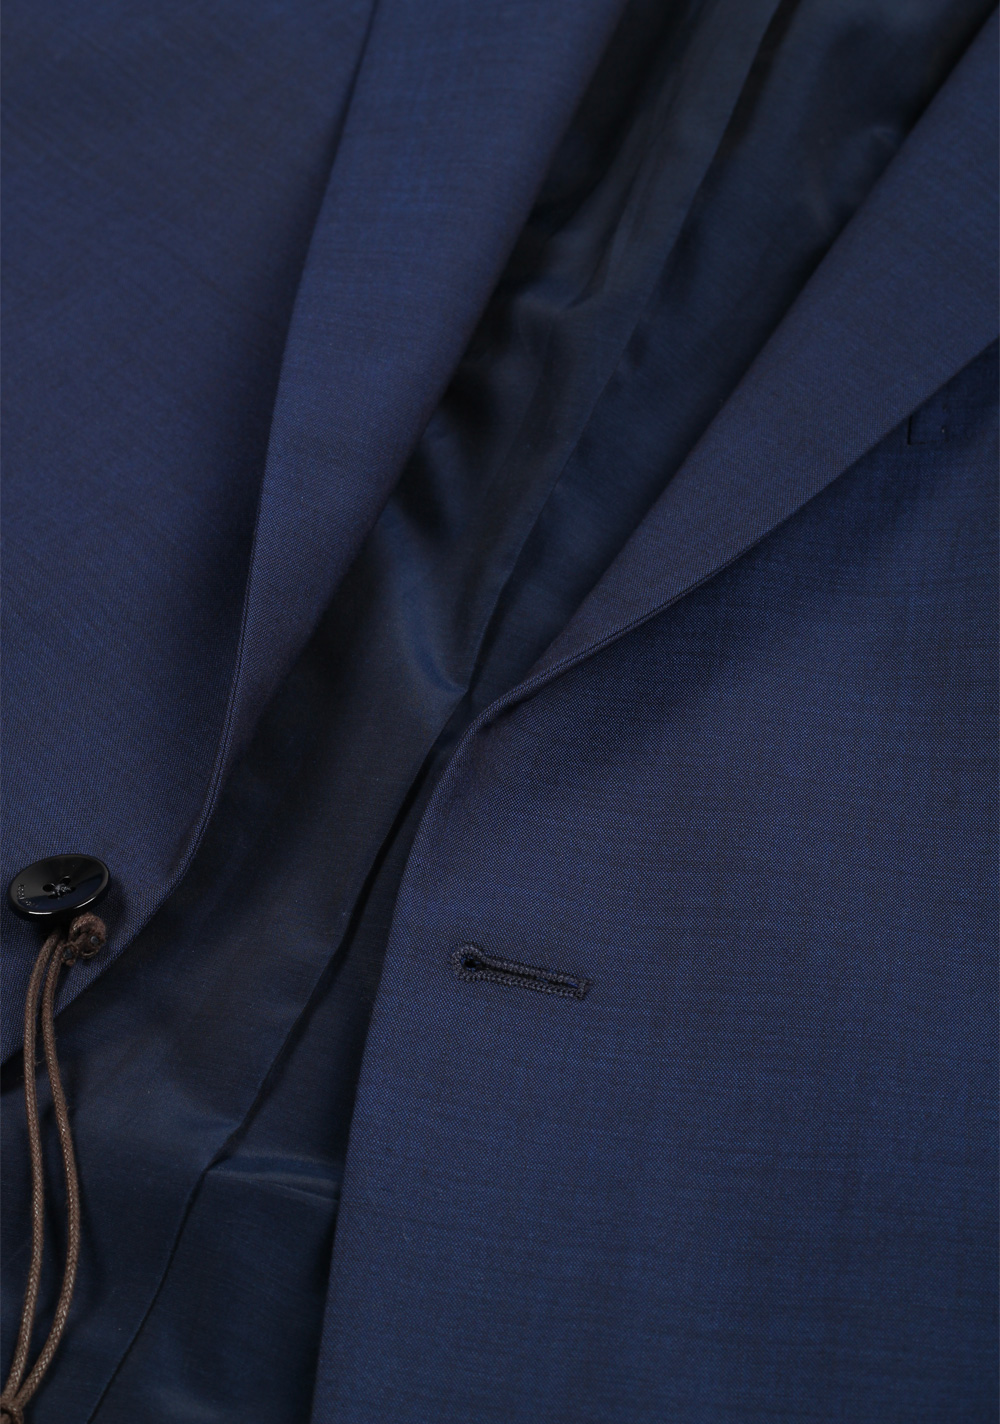 Boglioli Forza 52 Blue Suit Size 56 / 46R U.S. | Costume Limité